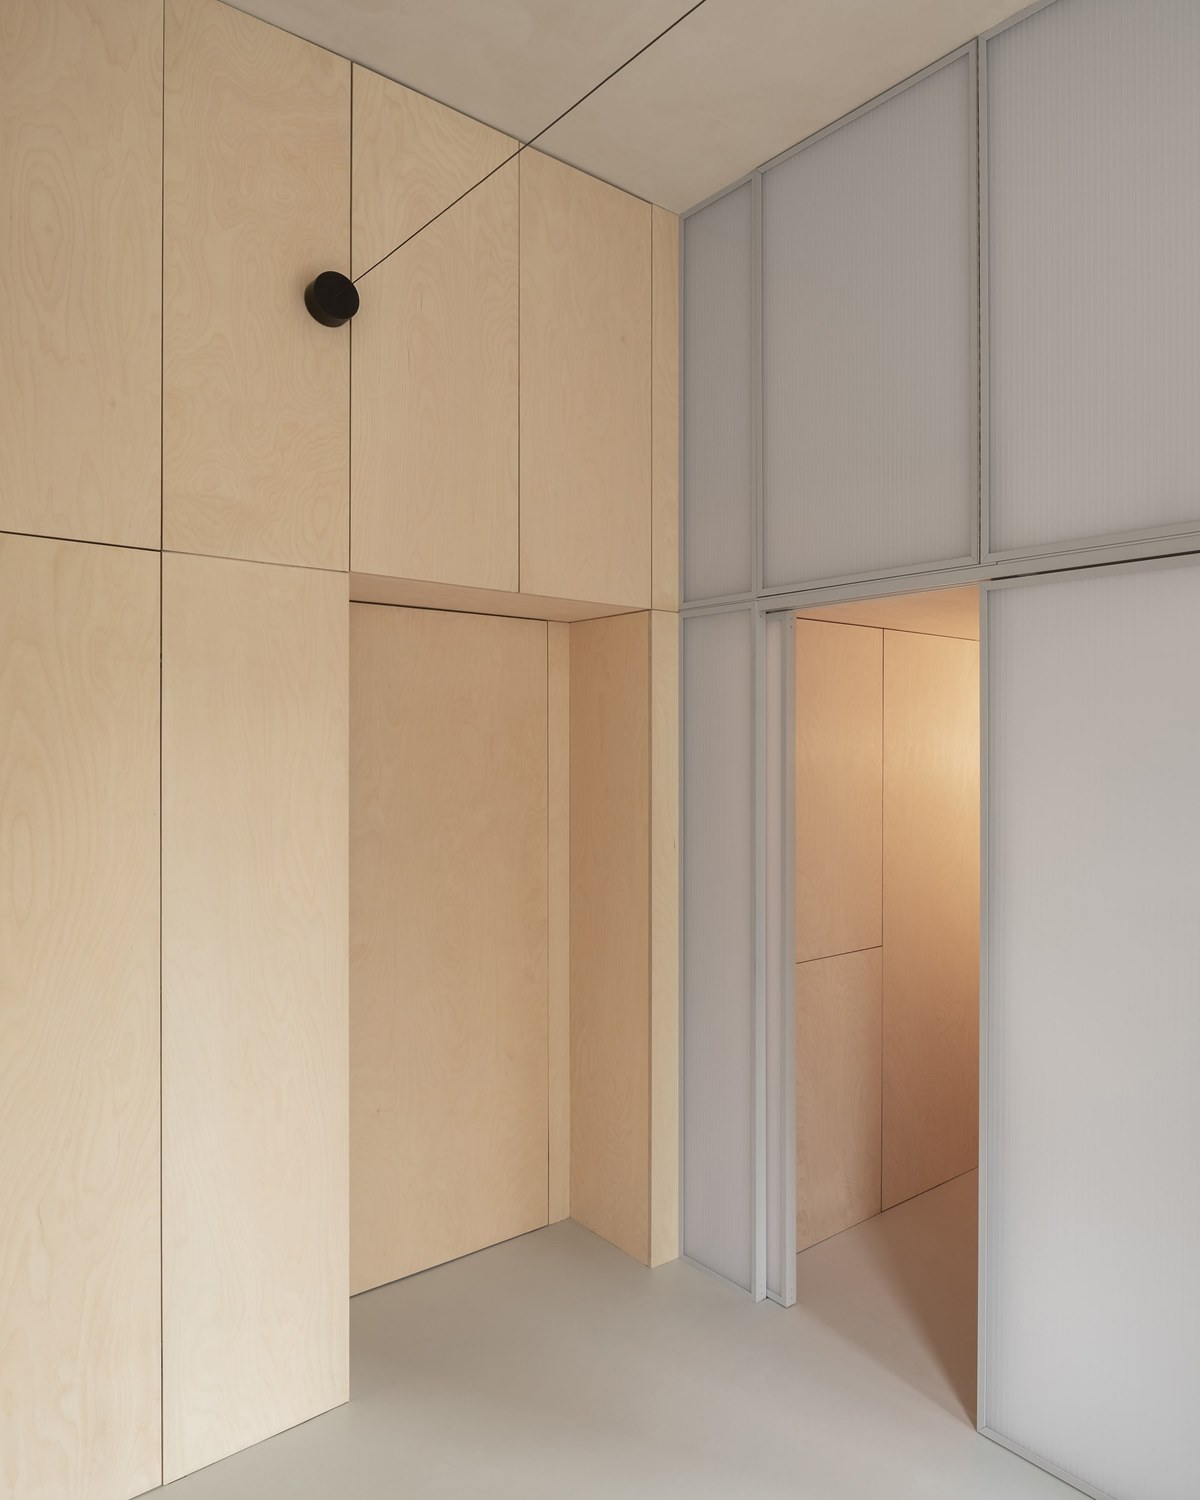 Shoji Apartment Interior Design by Proctor & Shaw